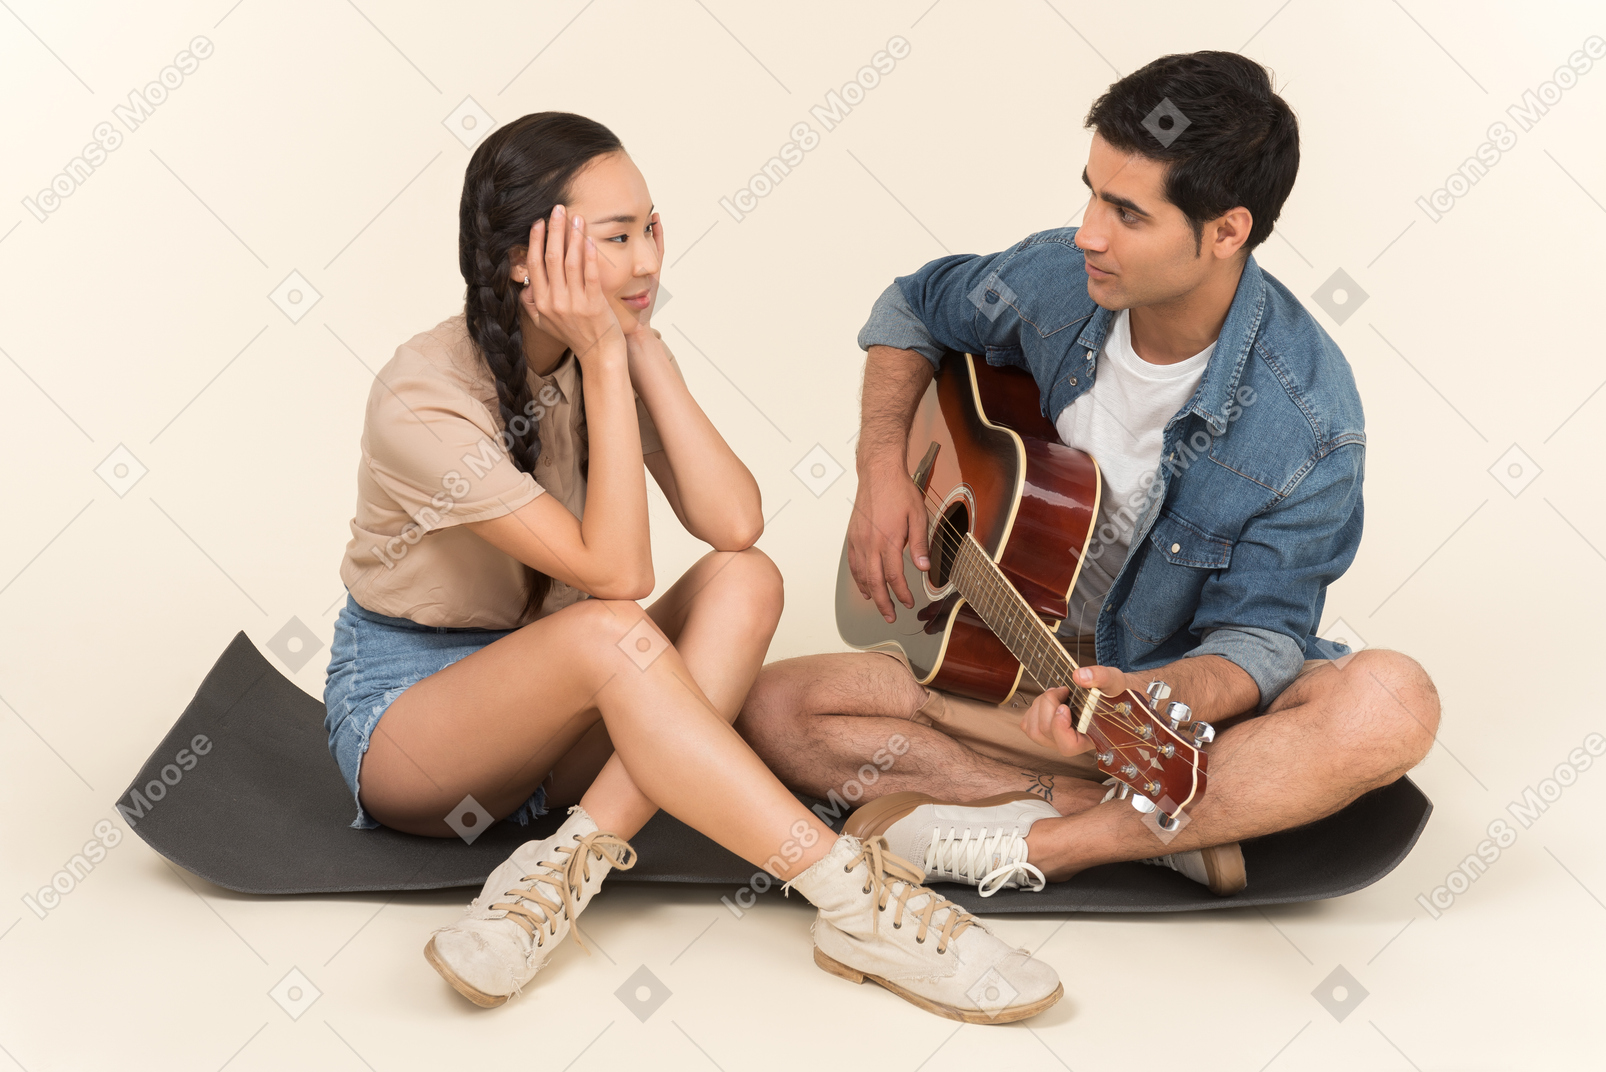 Jeune mec caucasien, jouer de la guitare, assis près de femme asiatique sur karimat